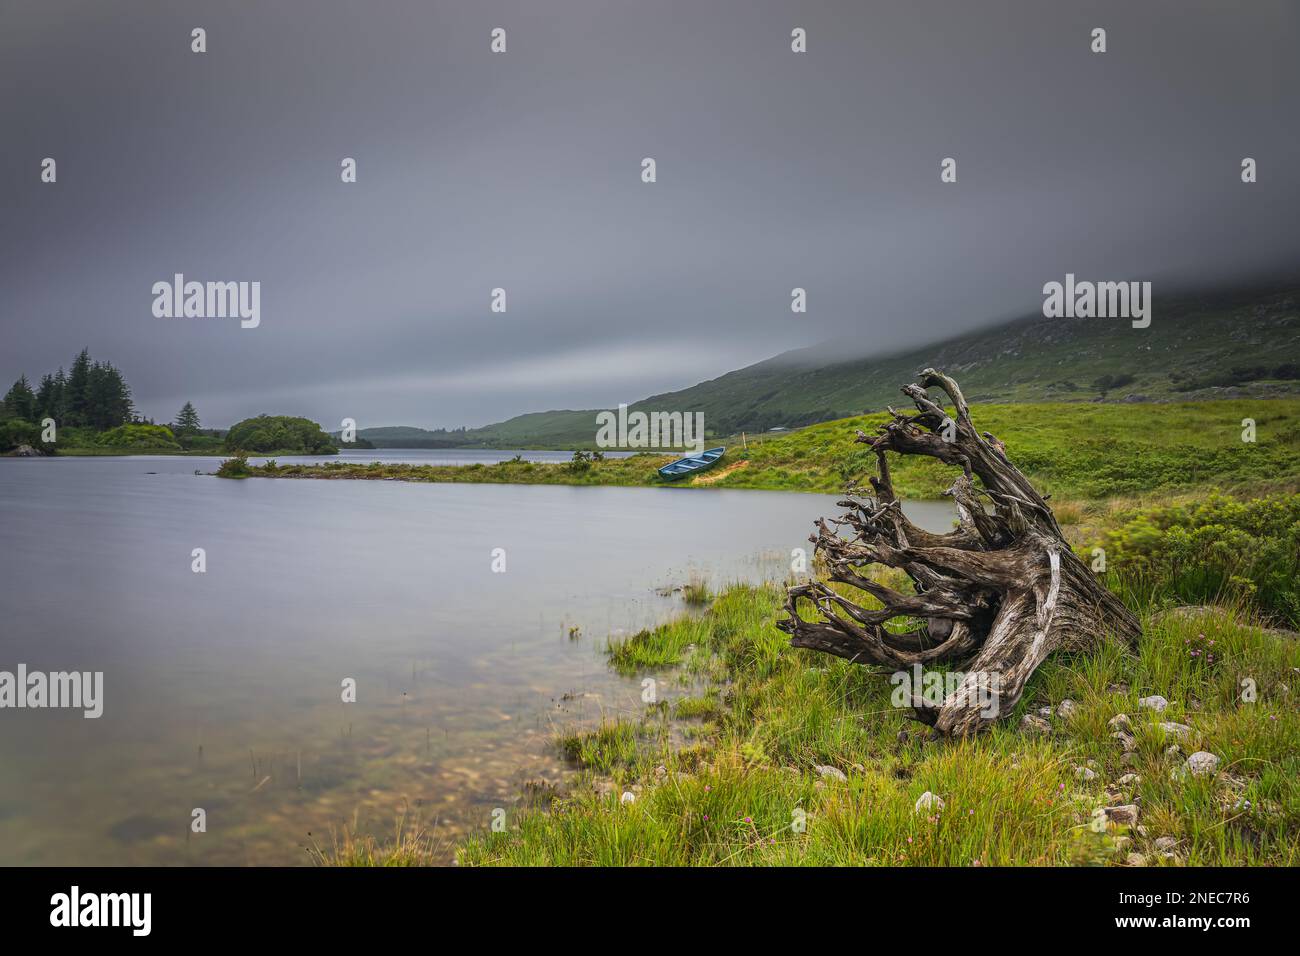 Tronco dell'albero con radici e barca a remi sul bordo del lago Ballynahinch a Connemara, Contea di Galway. Acqua sfocata e cielo scuro e drammatico, lunga esposizione Foto Stock